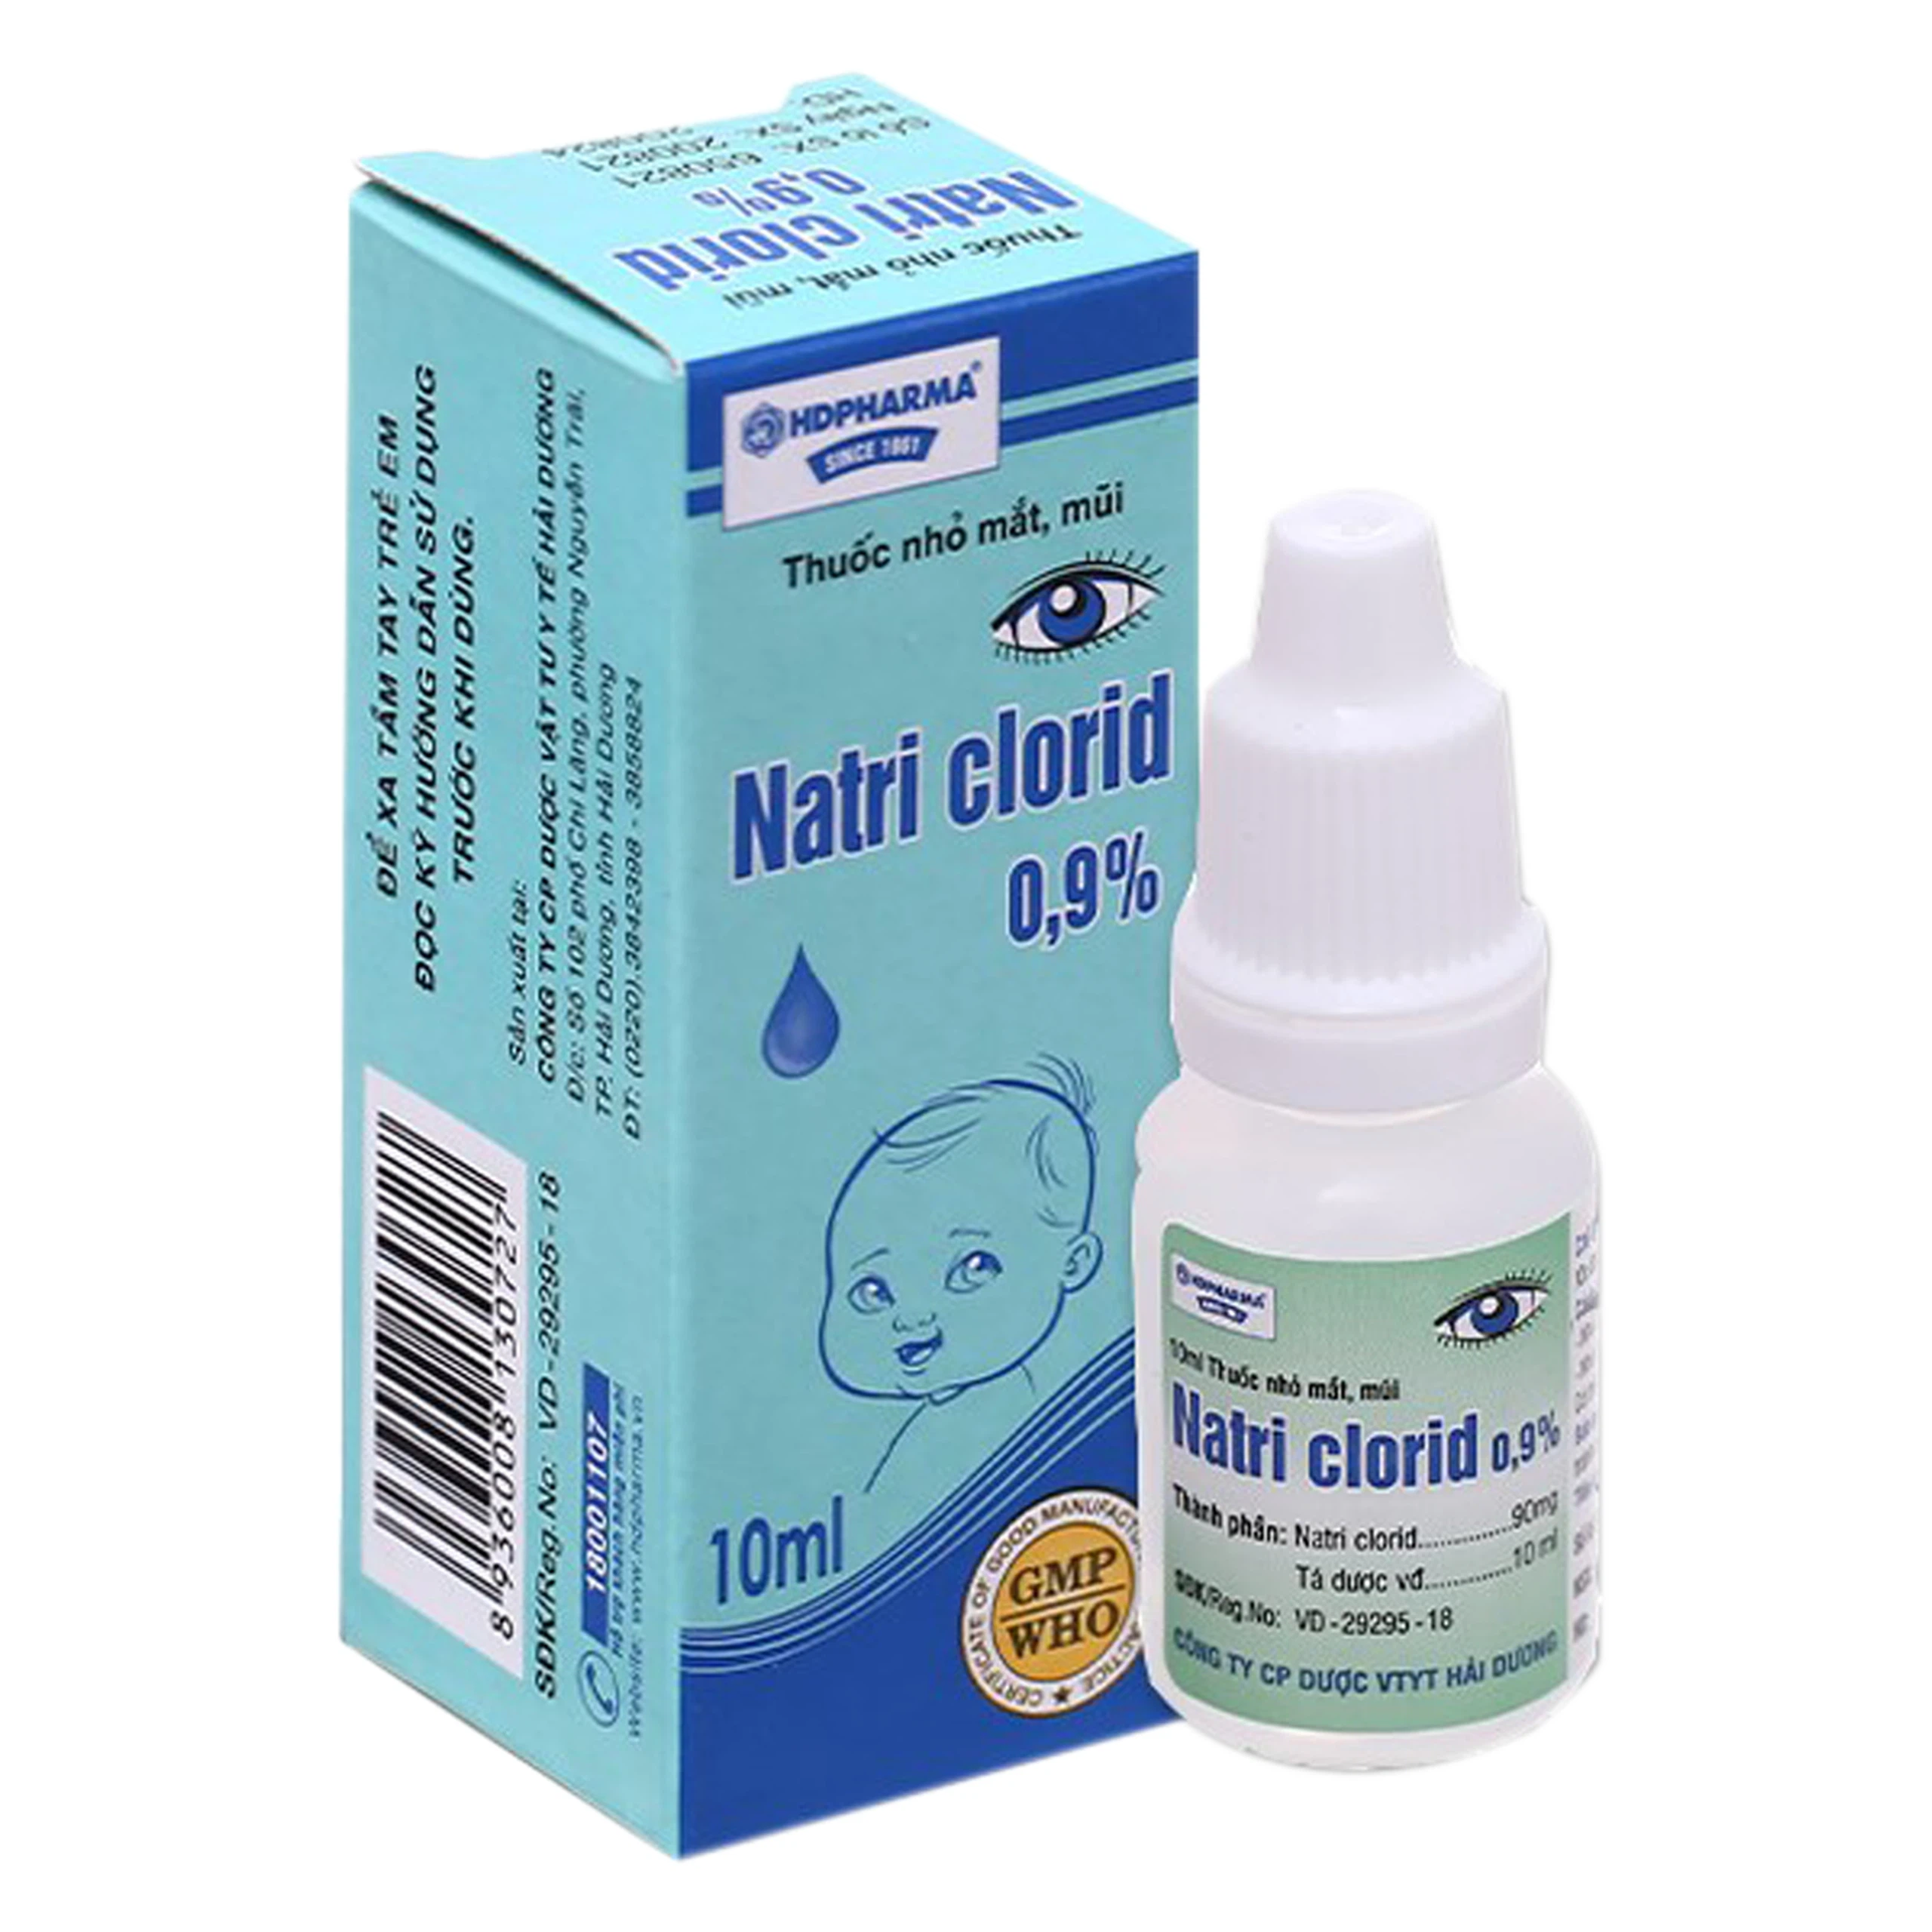 Thuốc nhỏ mắt, mũi Natri Clorid 0,9% HDPharma điều trị triệu chứng mỏi mắt, mắt đỏ, sổ mũi, nghẹt mũi (10ml)